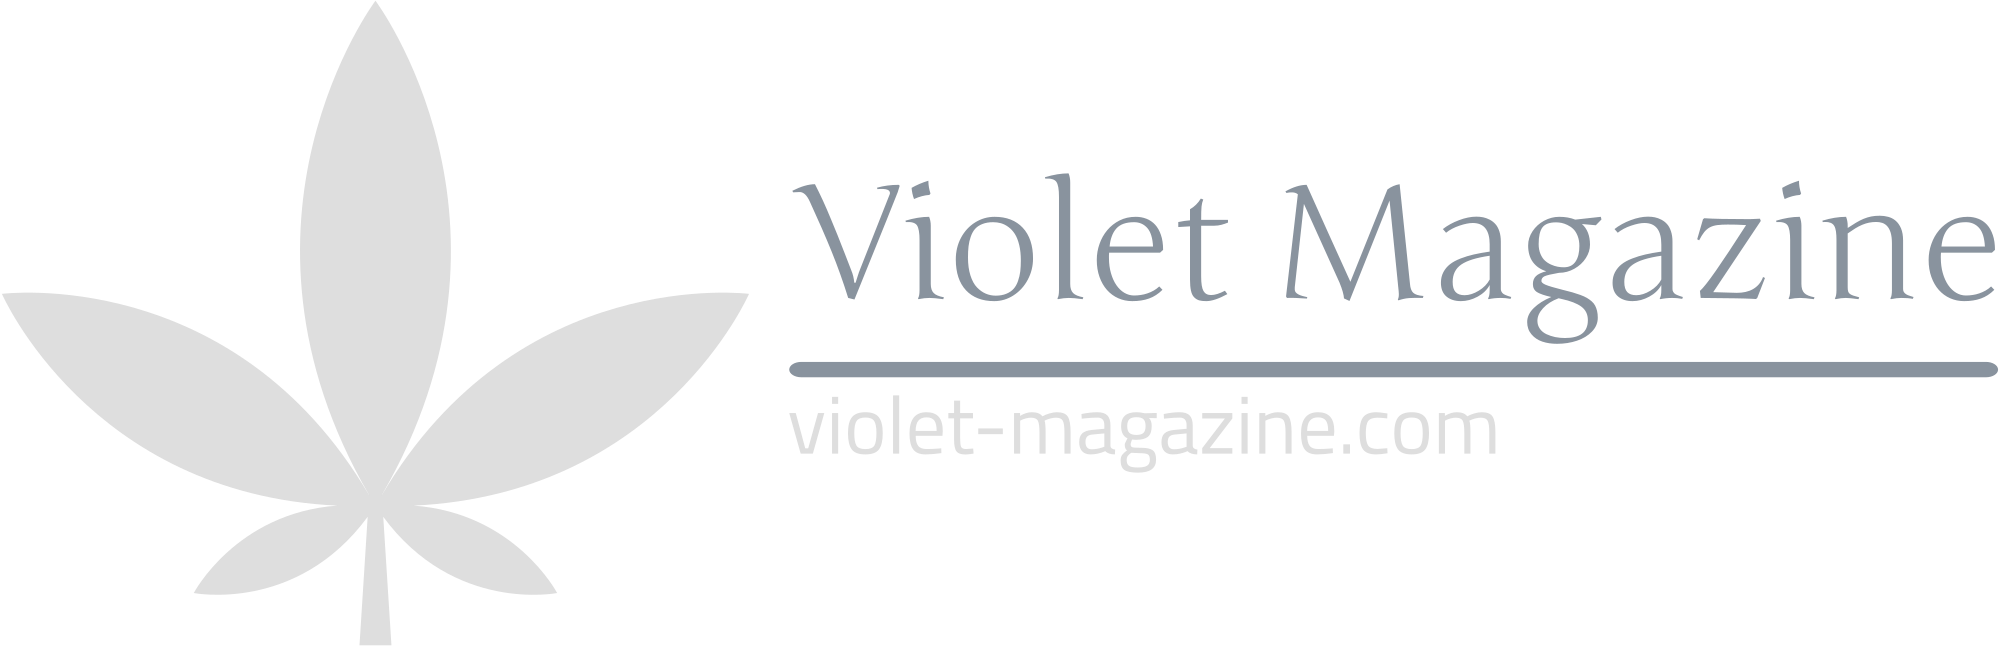 violet-magazine_logo